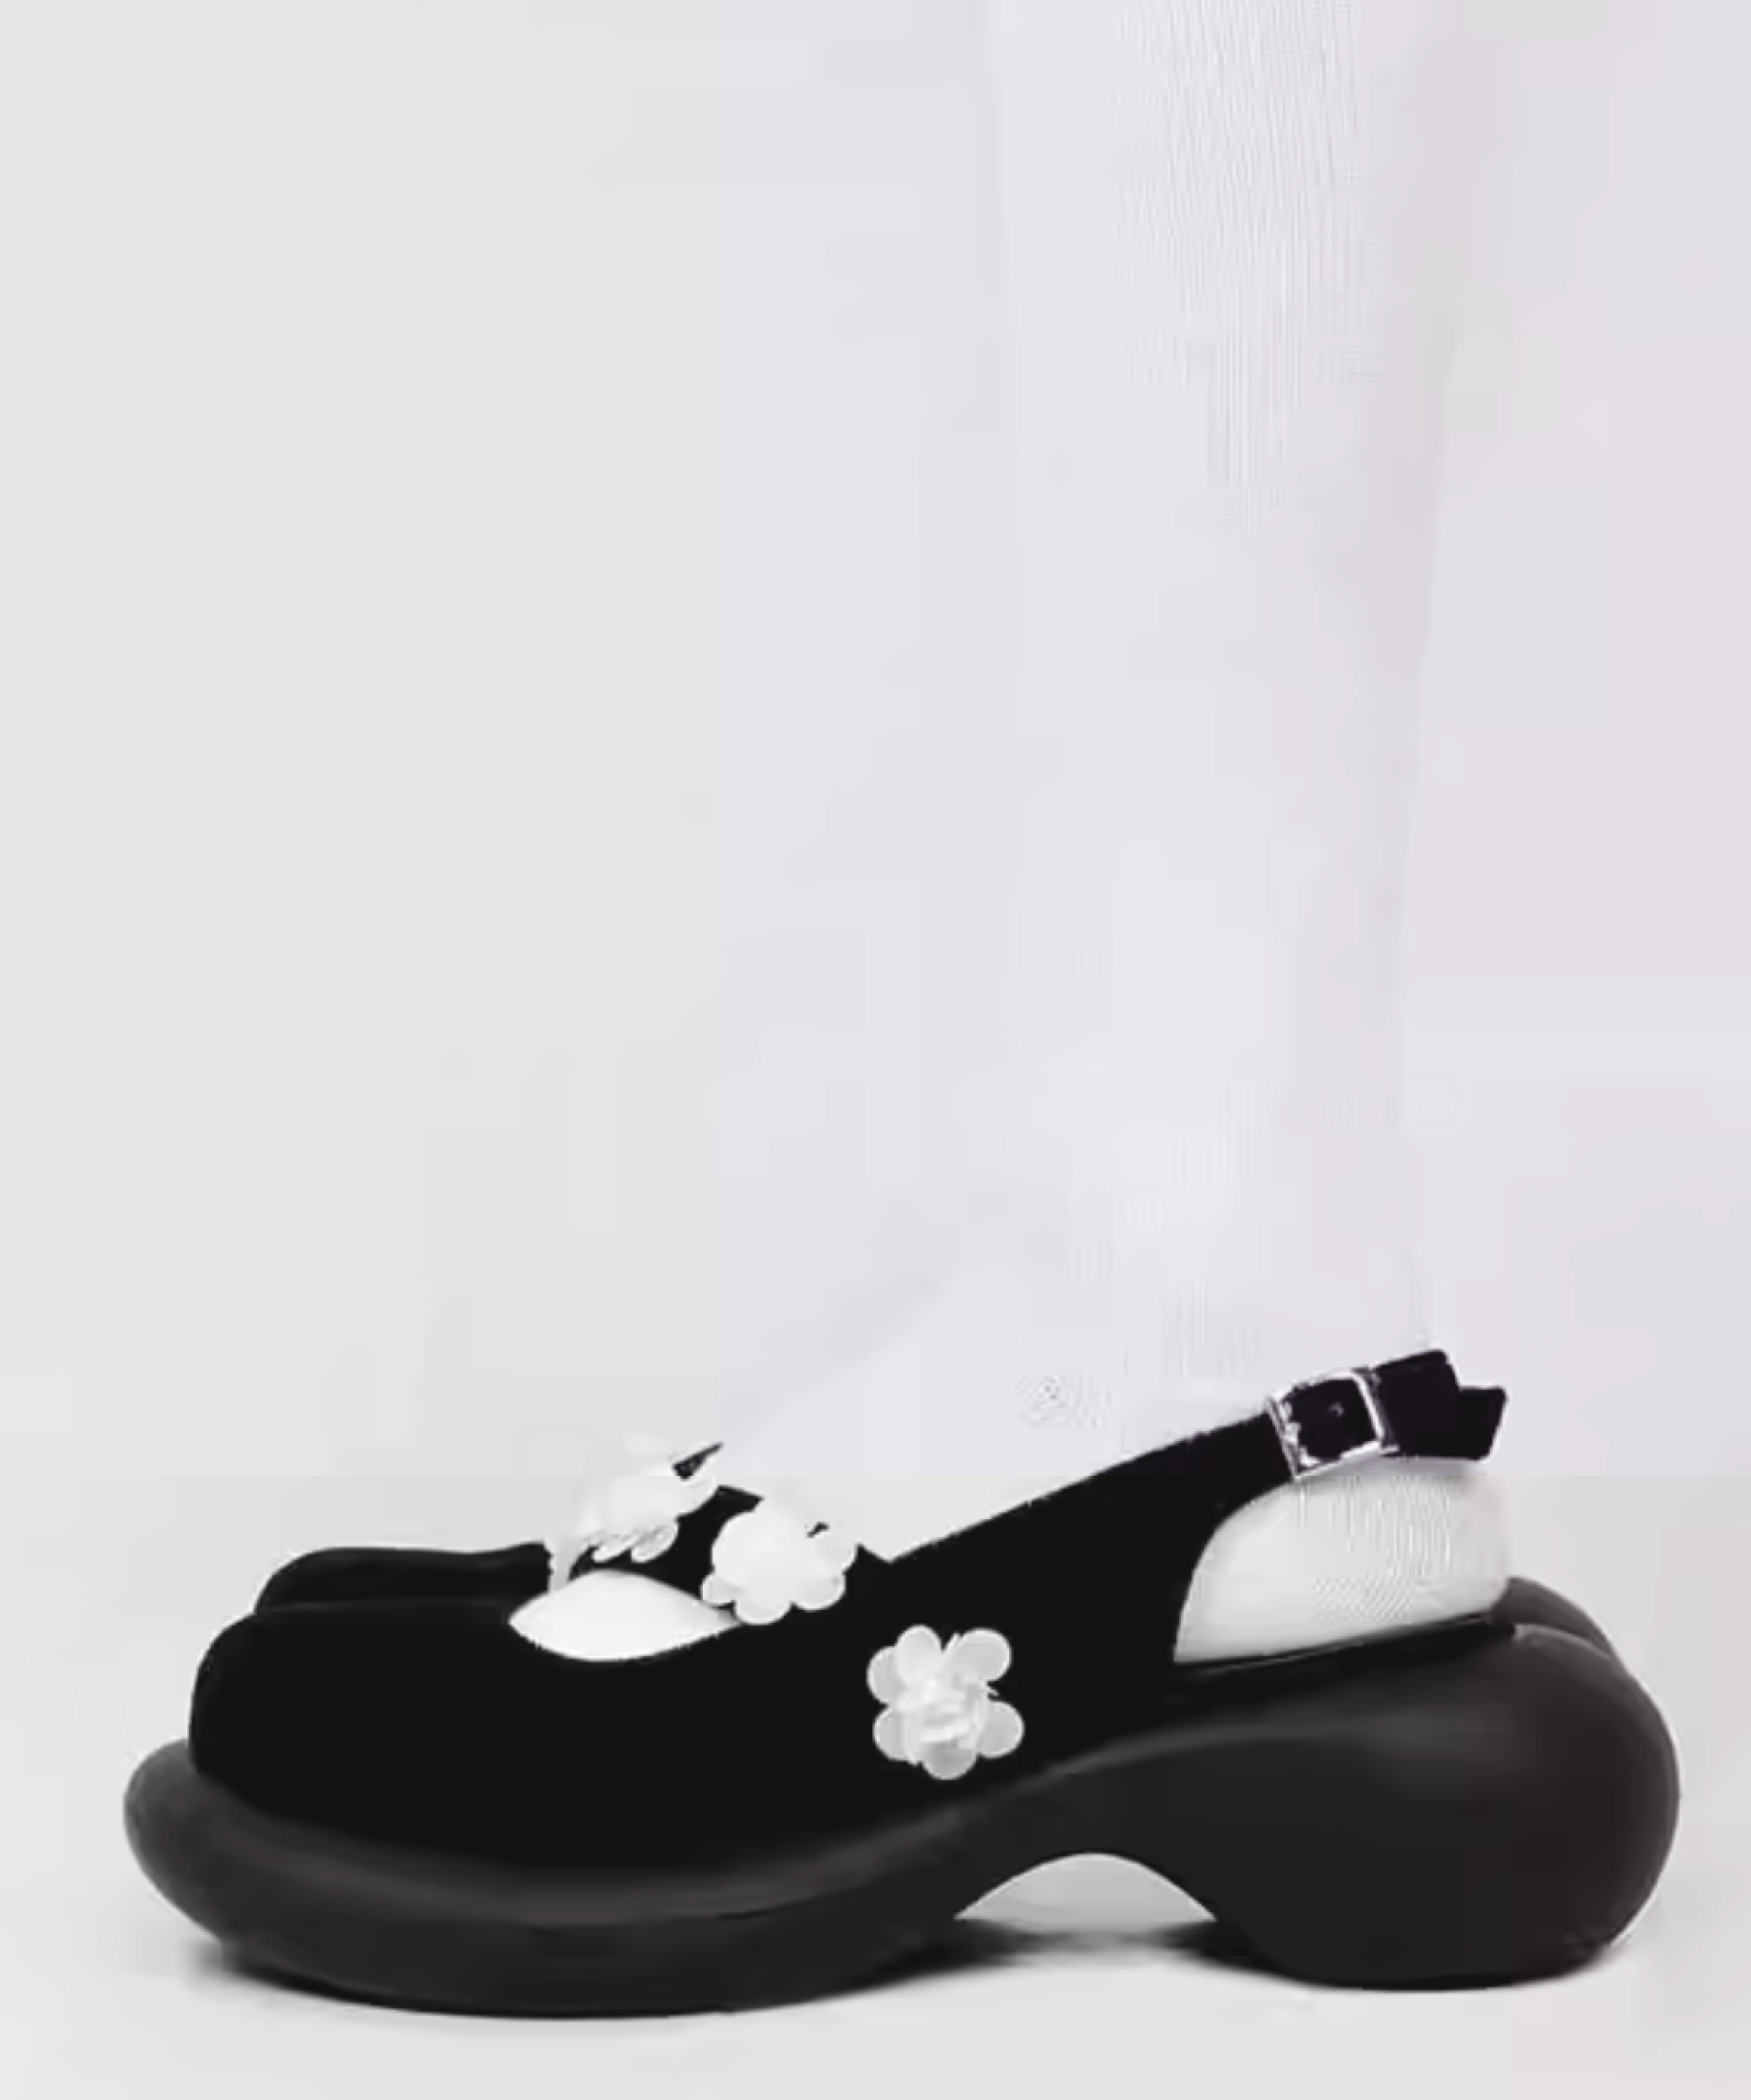 Flower Embellished Sandals